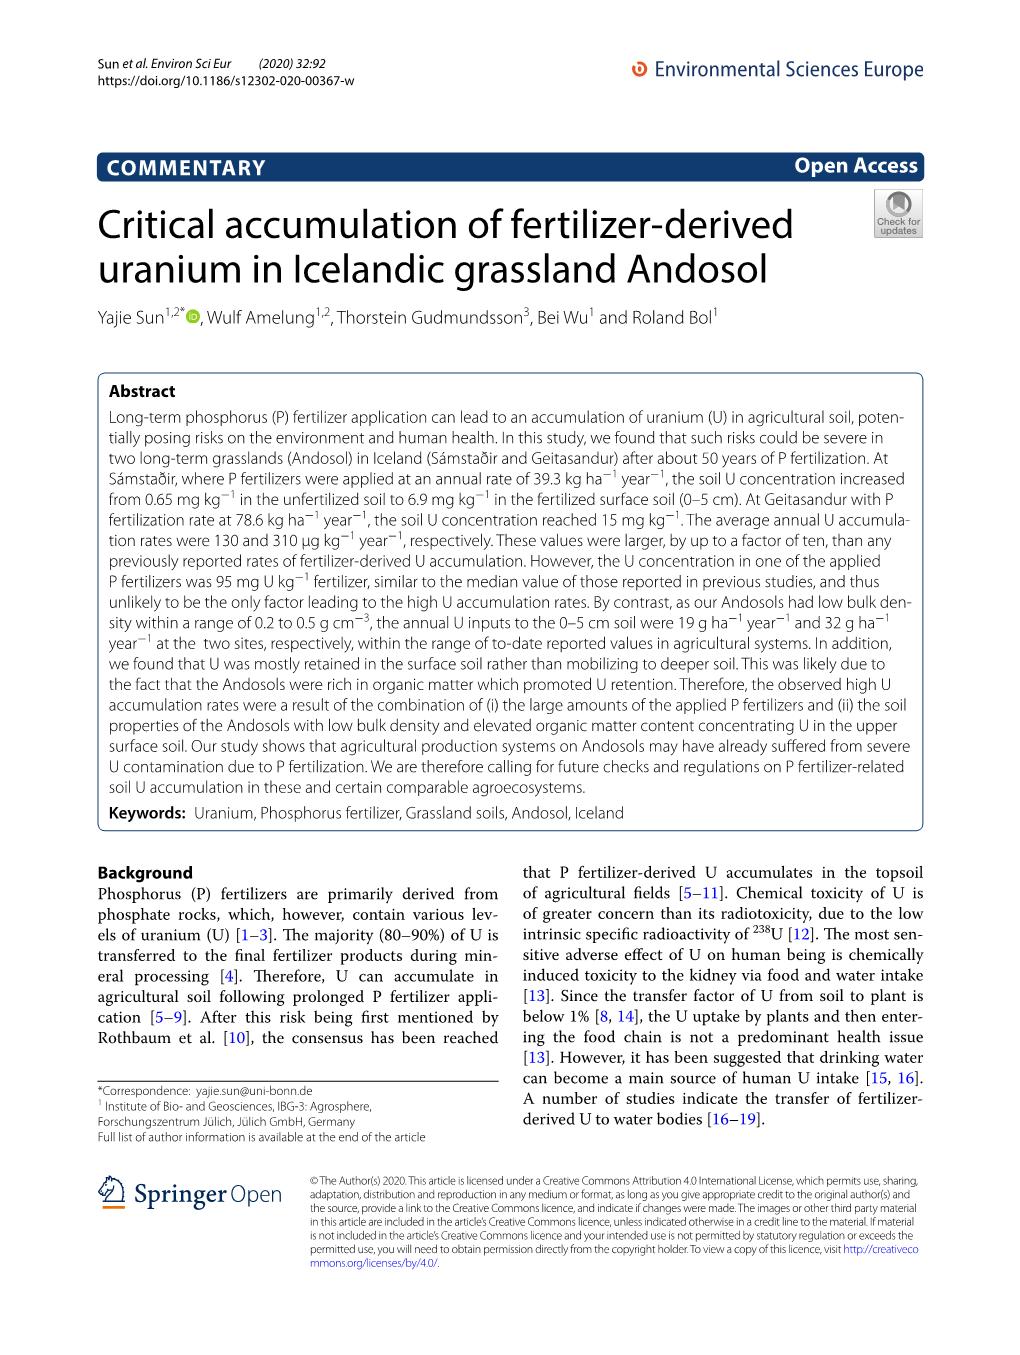 Critical Accumulation of Fertilizer-Derived Uranium In